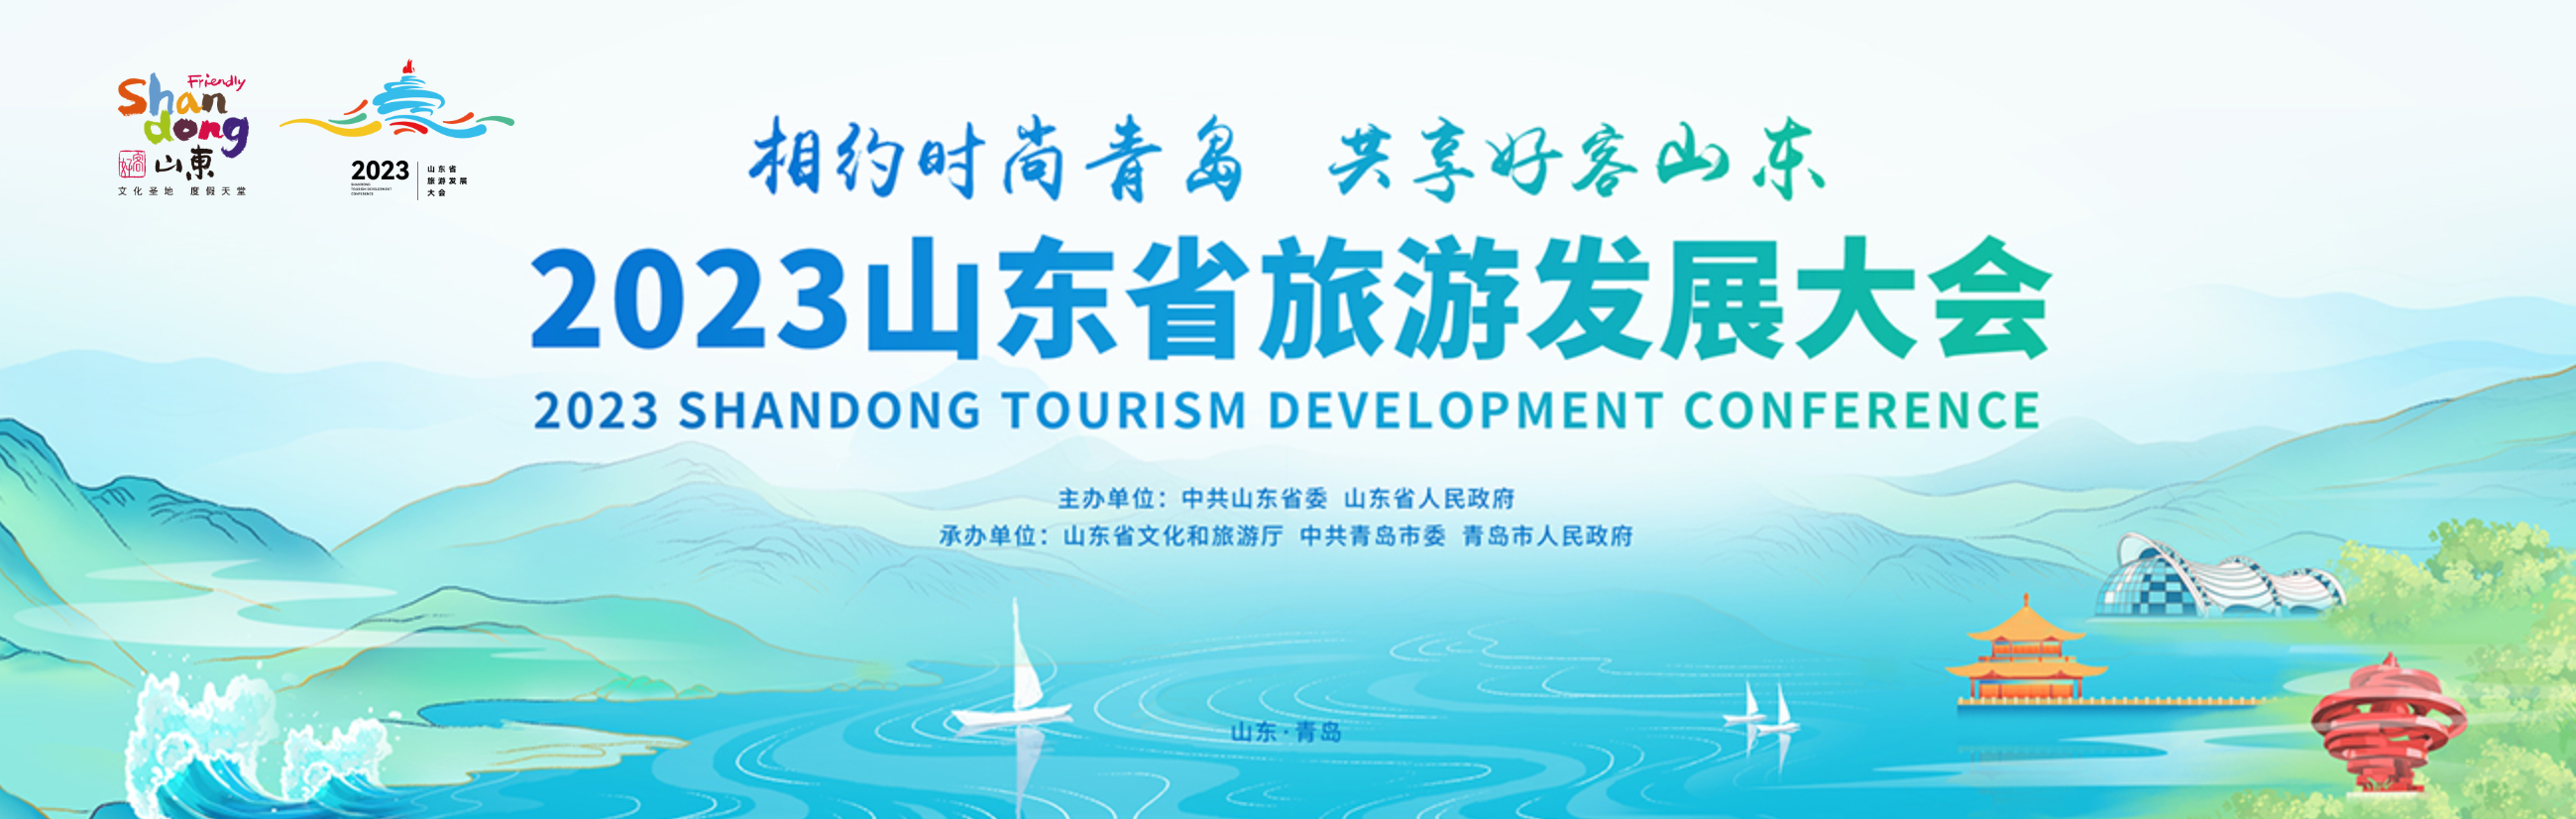 2023山东省旅游发展大会官网上线